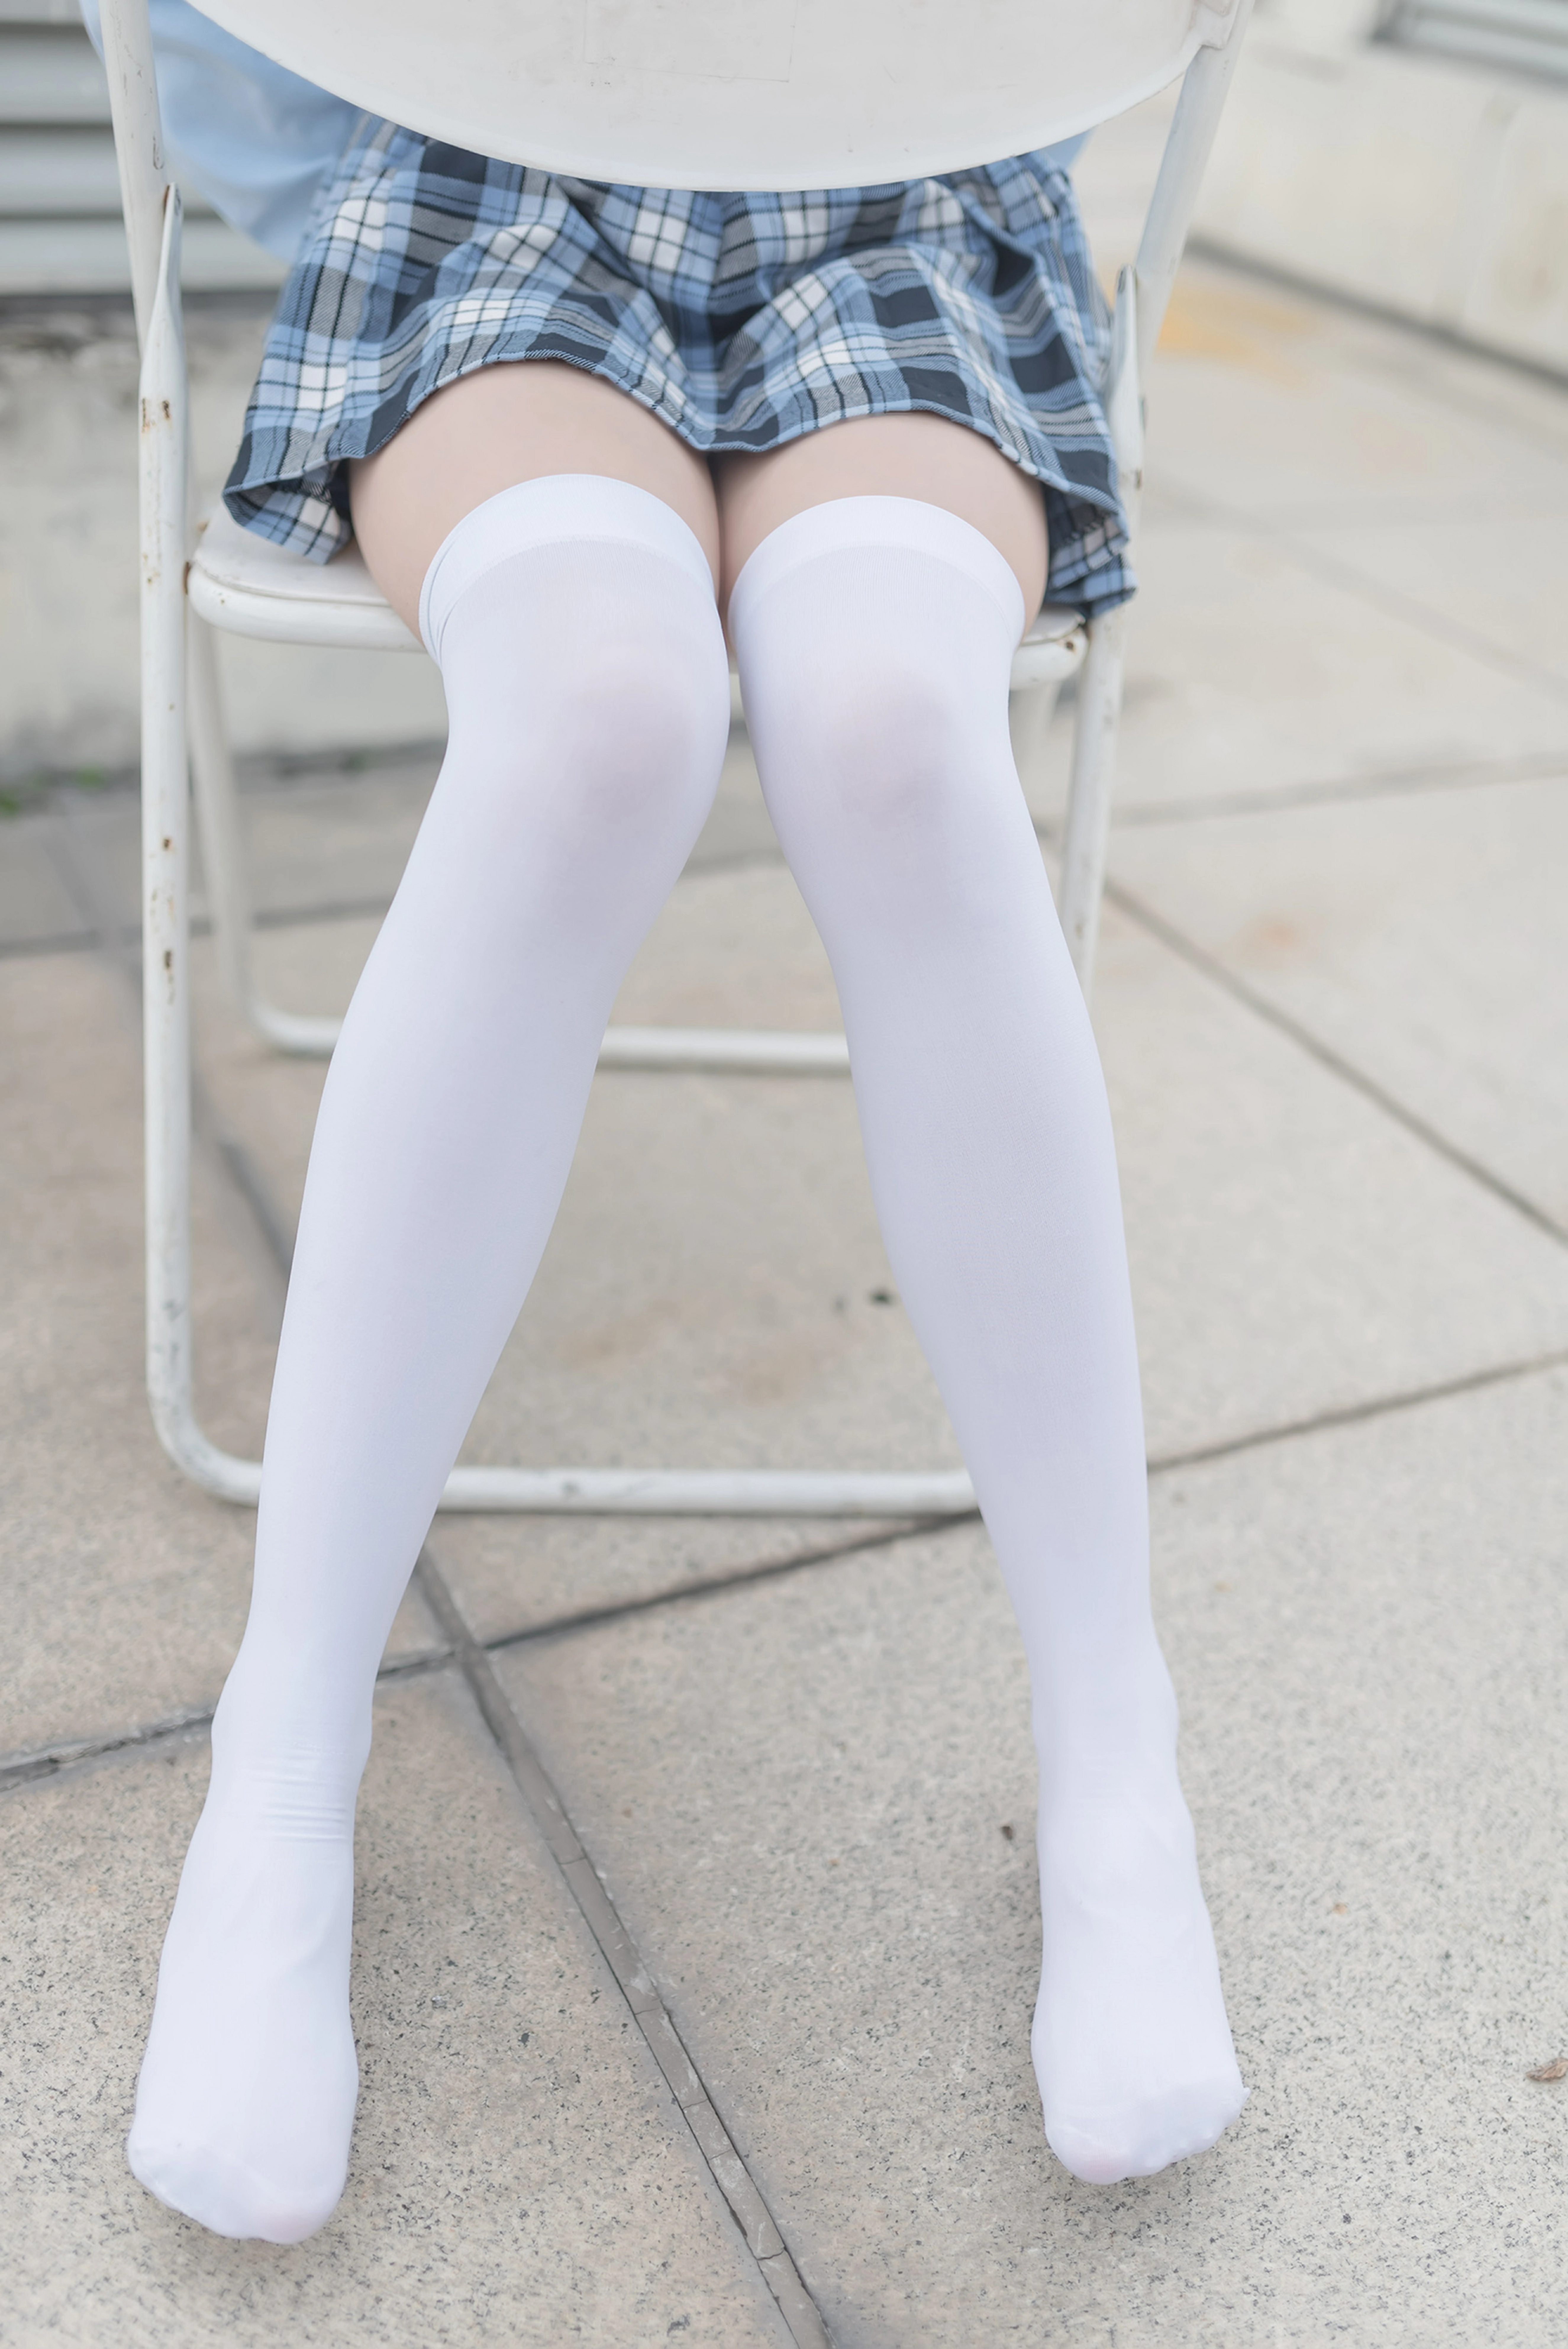 [风之领域]NO.189 萝莉少女 格子短裙加白色丝袜美腿性感私房写真集,